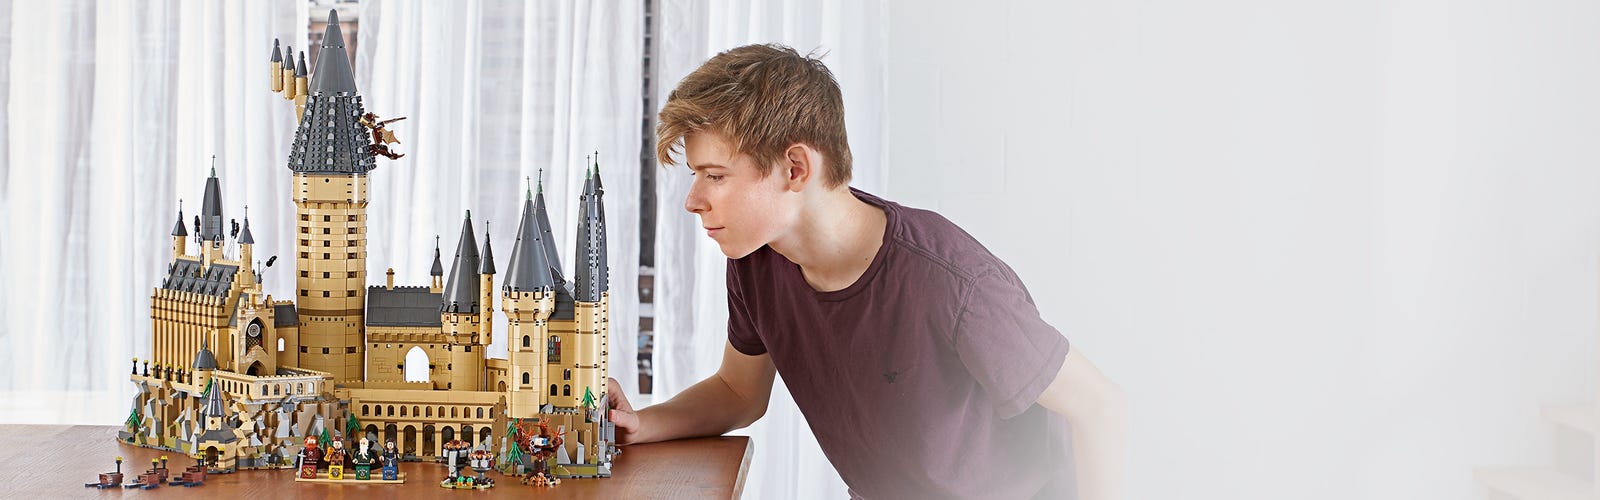 Buy LEGO 71043 Harry Potter Hogwarts Castle Model, Big Collectable